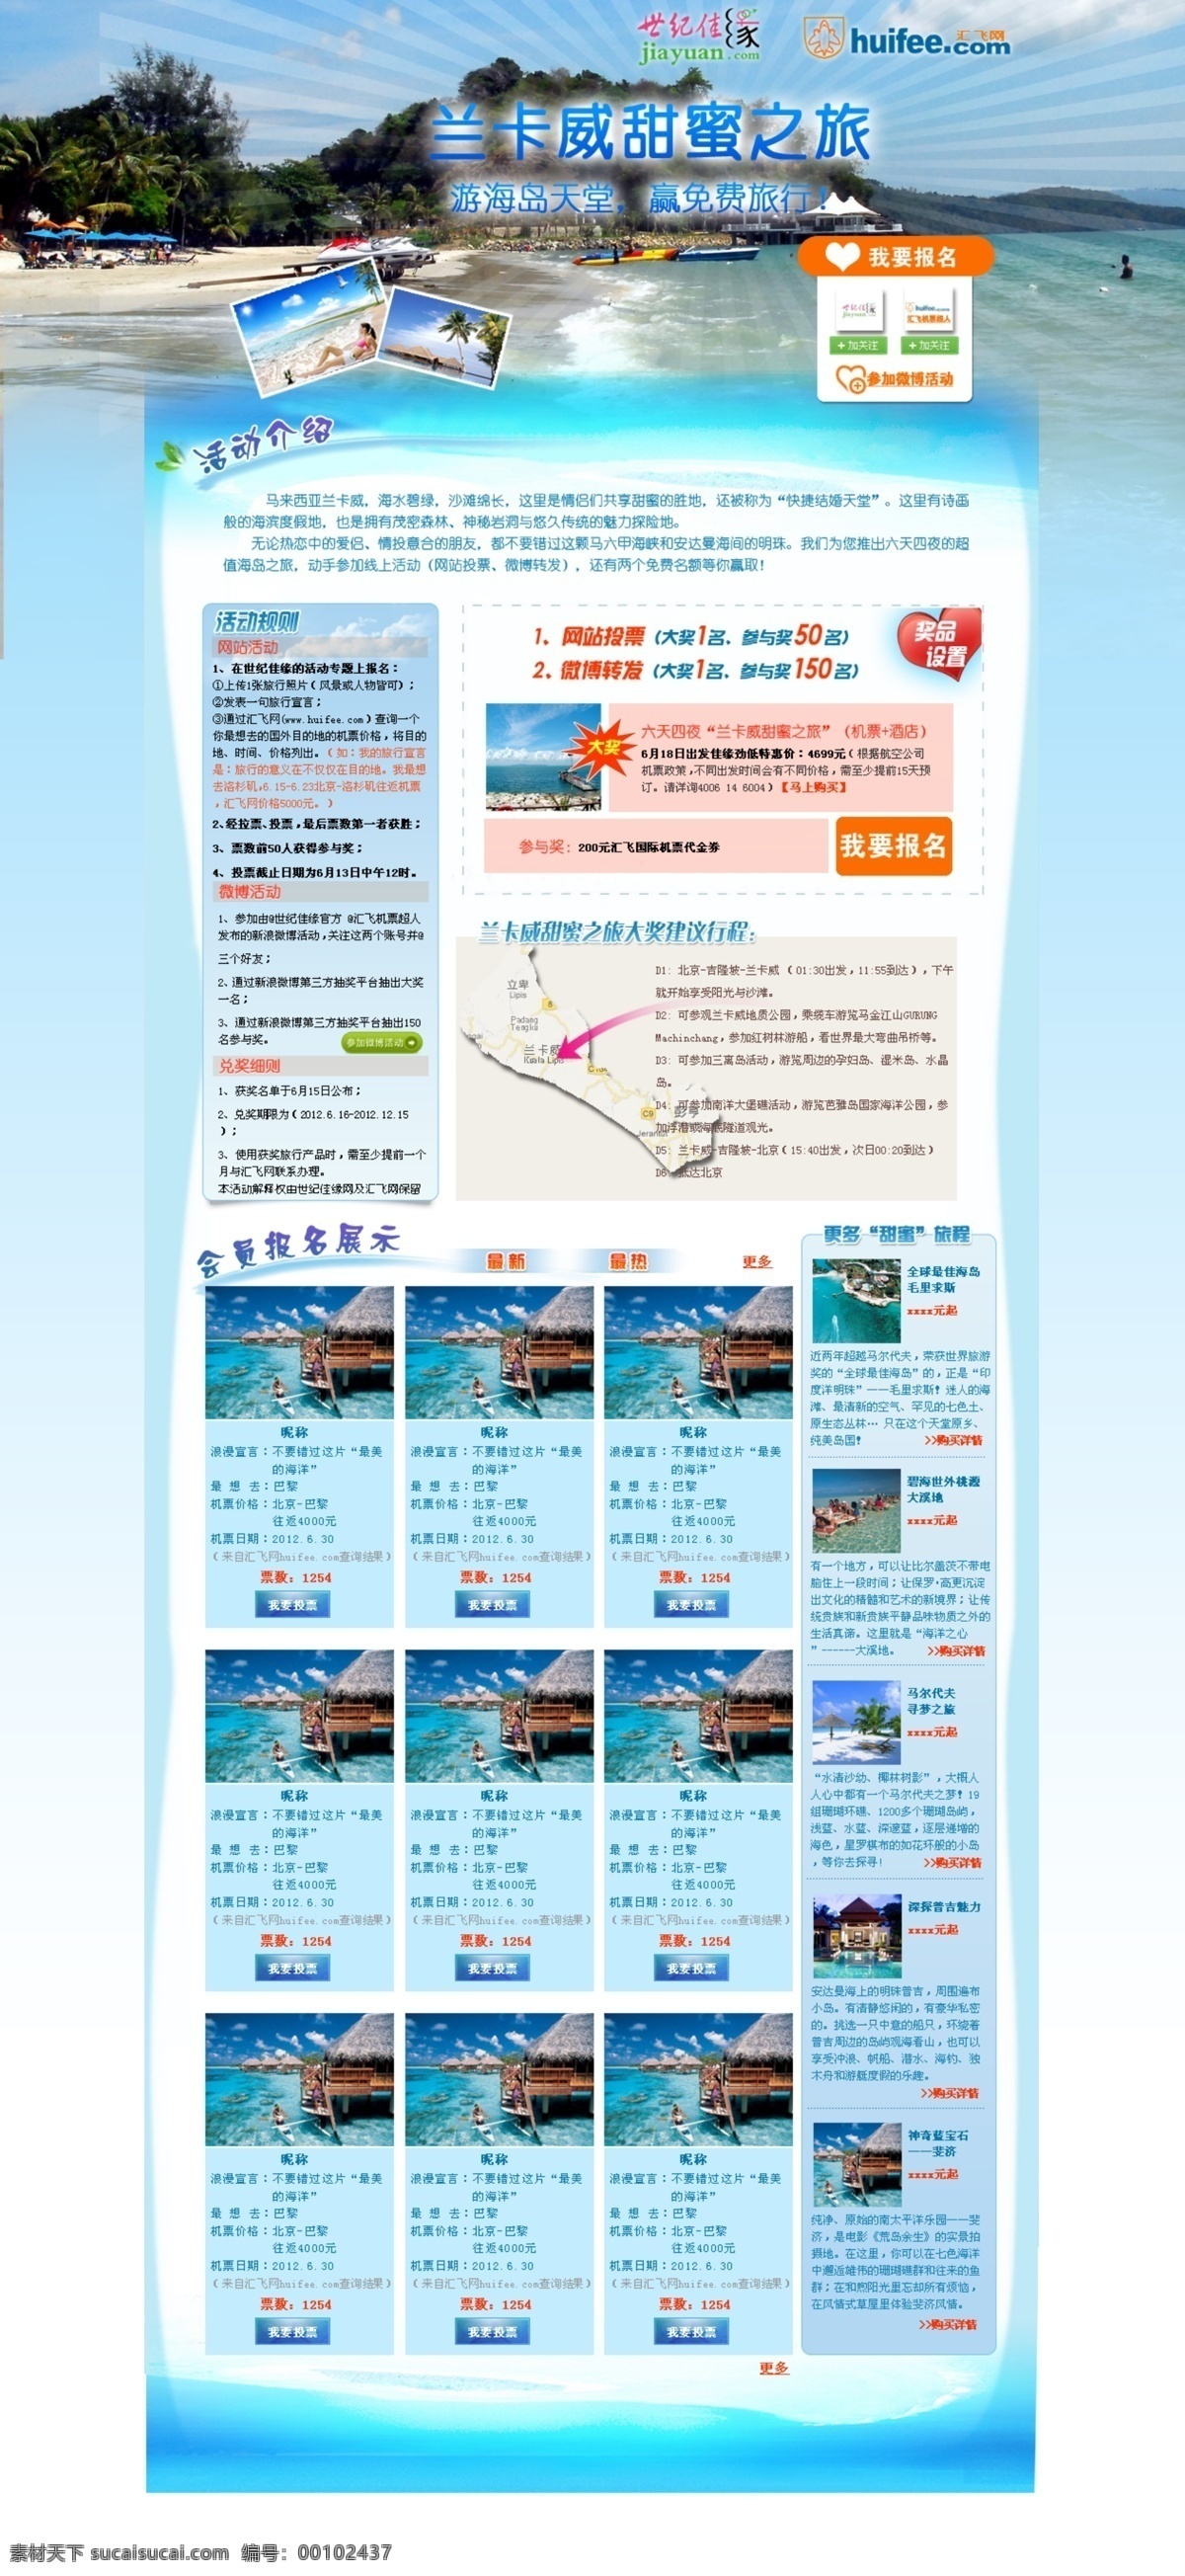 兰卡 威 甜蜜 之旅 海边 蓝色 网页 兰卡威 原创设计 原创网页设计